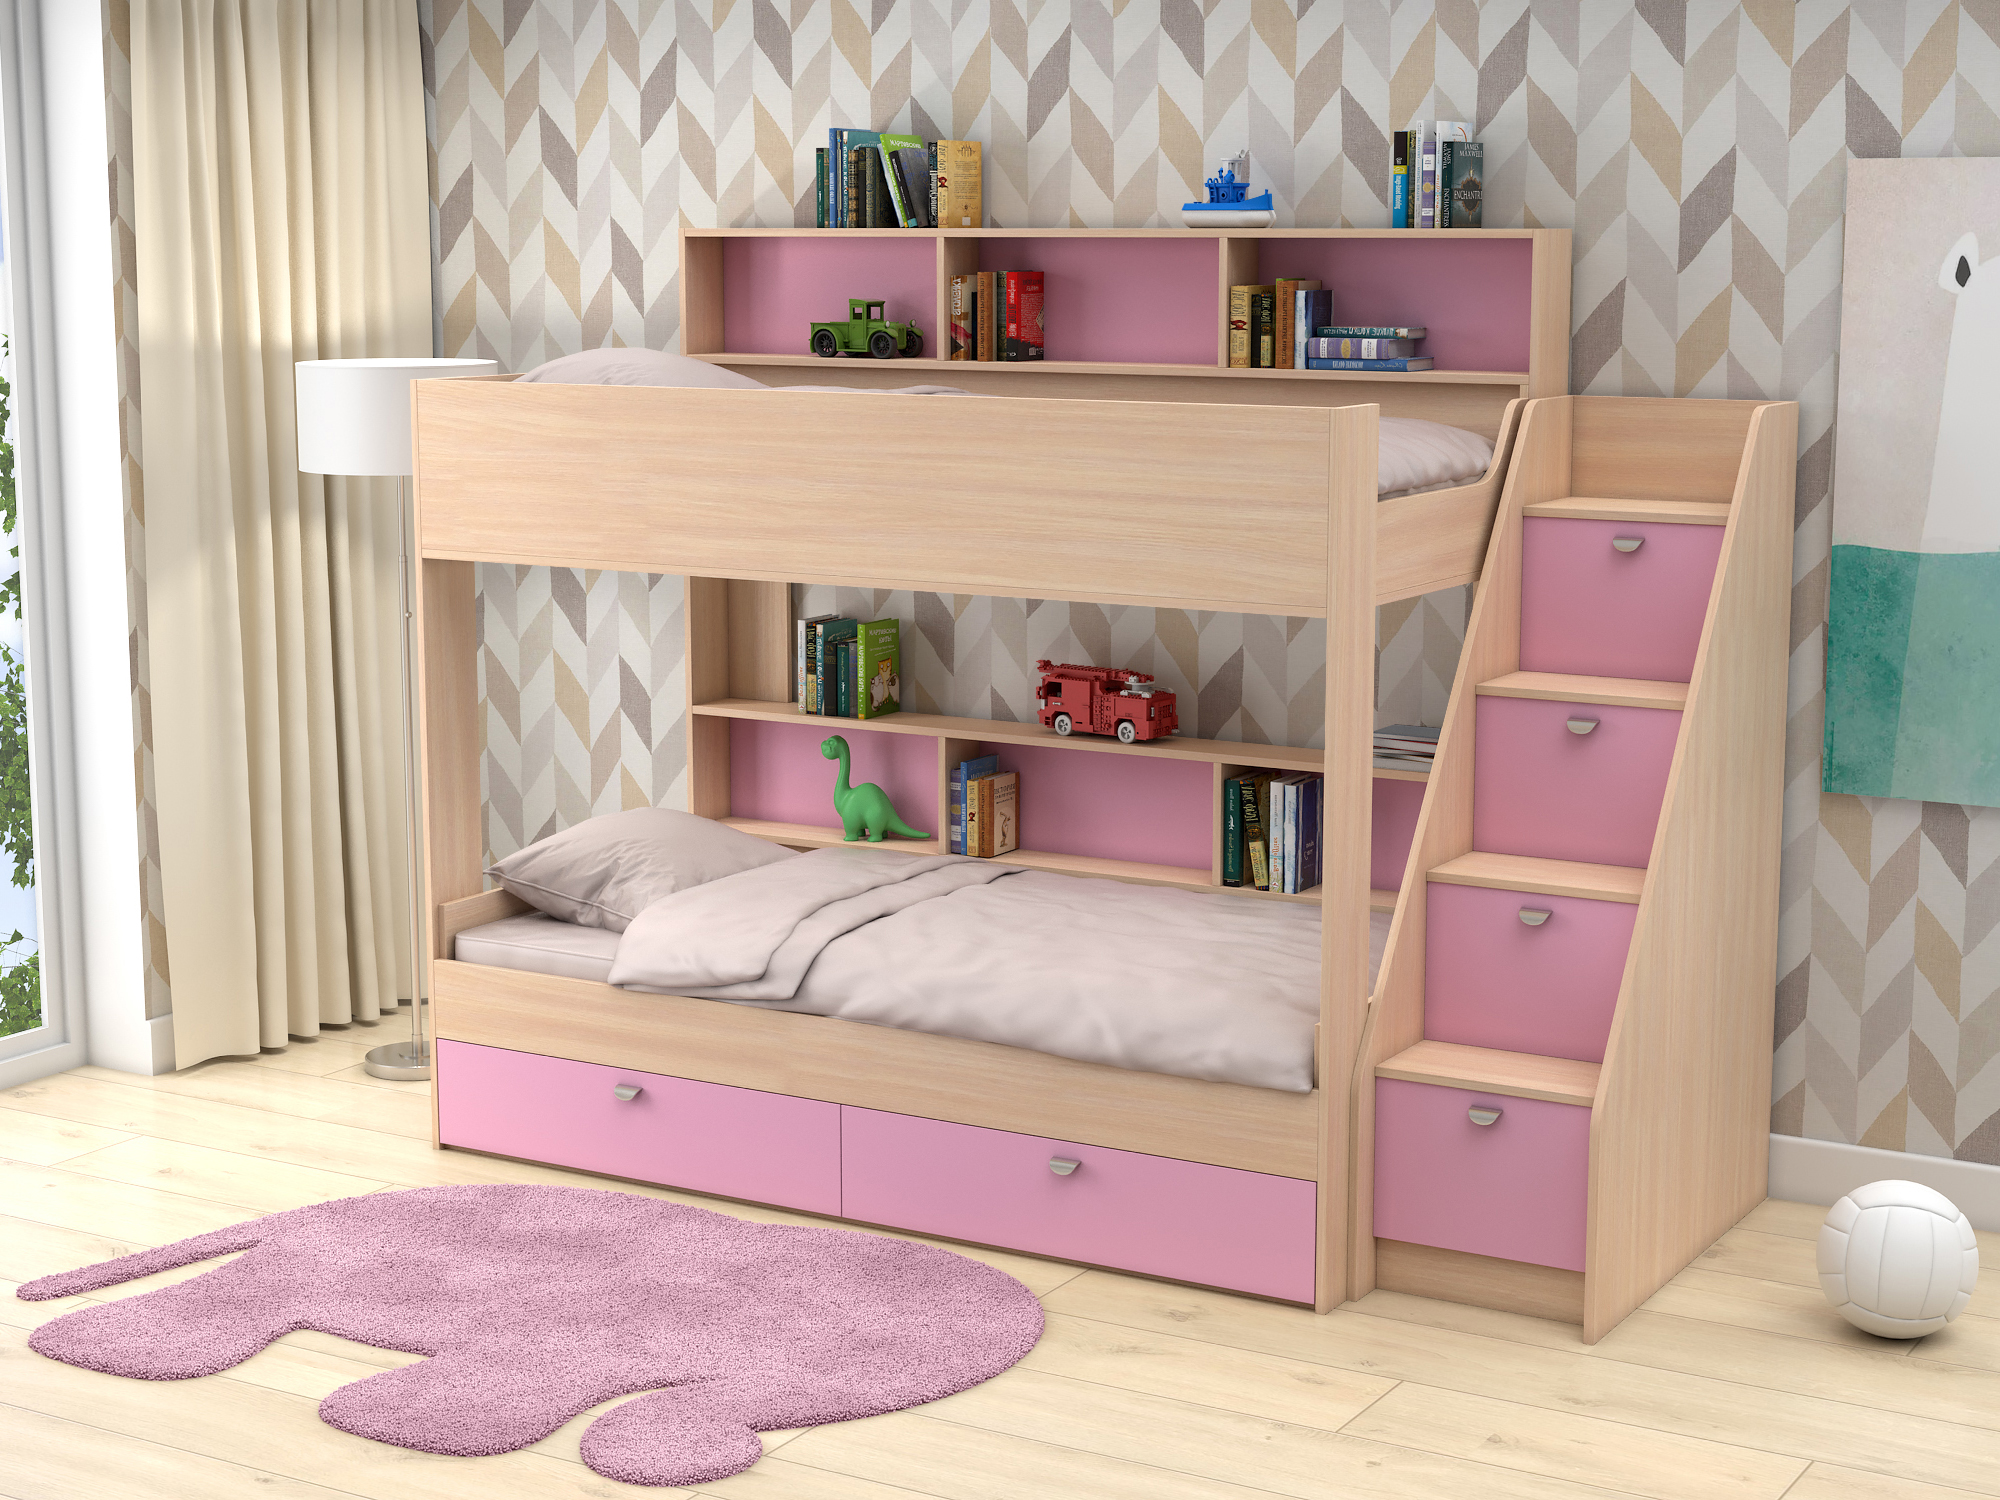 Двухъярусная кровать Golden Kids 10 (90х190) Розовый, Белый, Бежевый, ЛДСП кровать двухъярусная эльбрус 42 10 02 черный